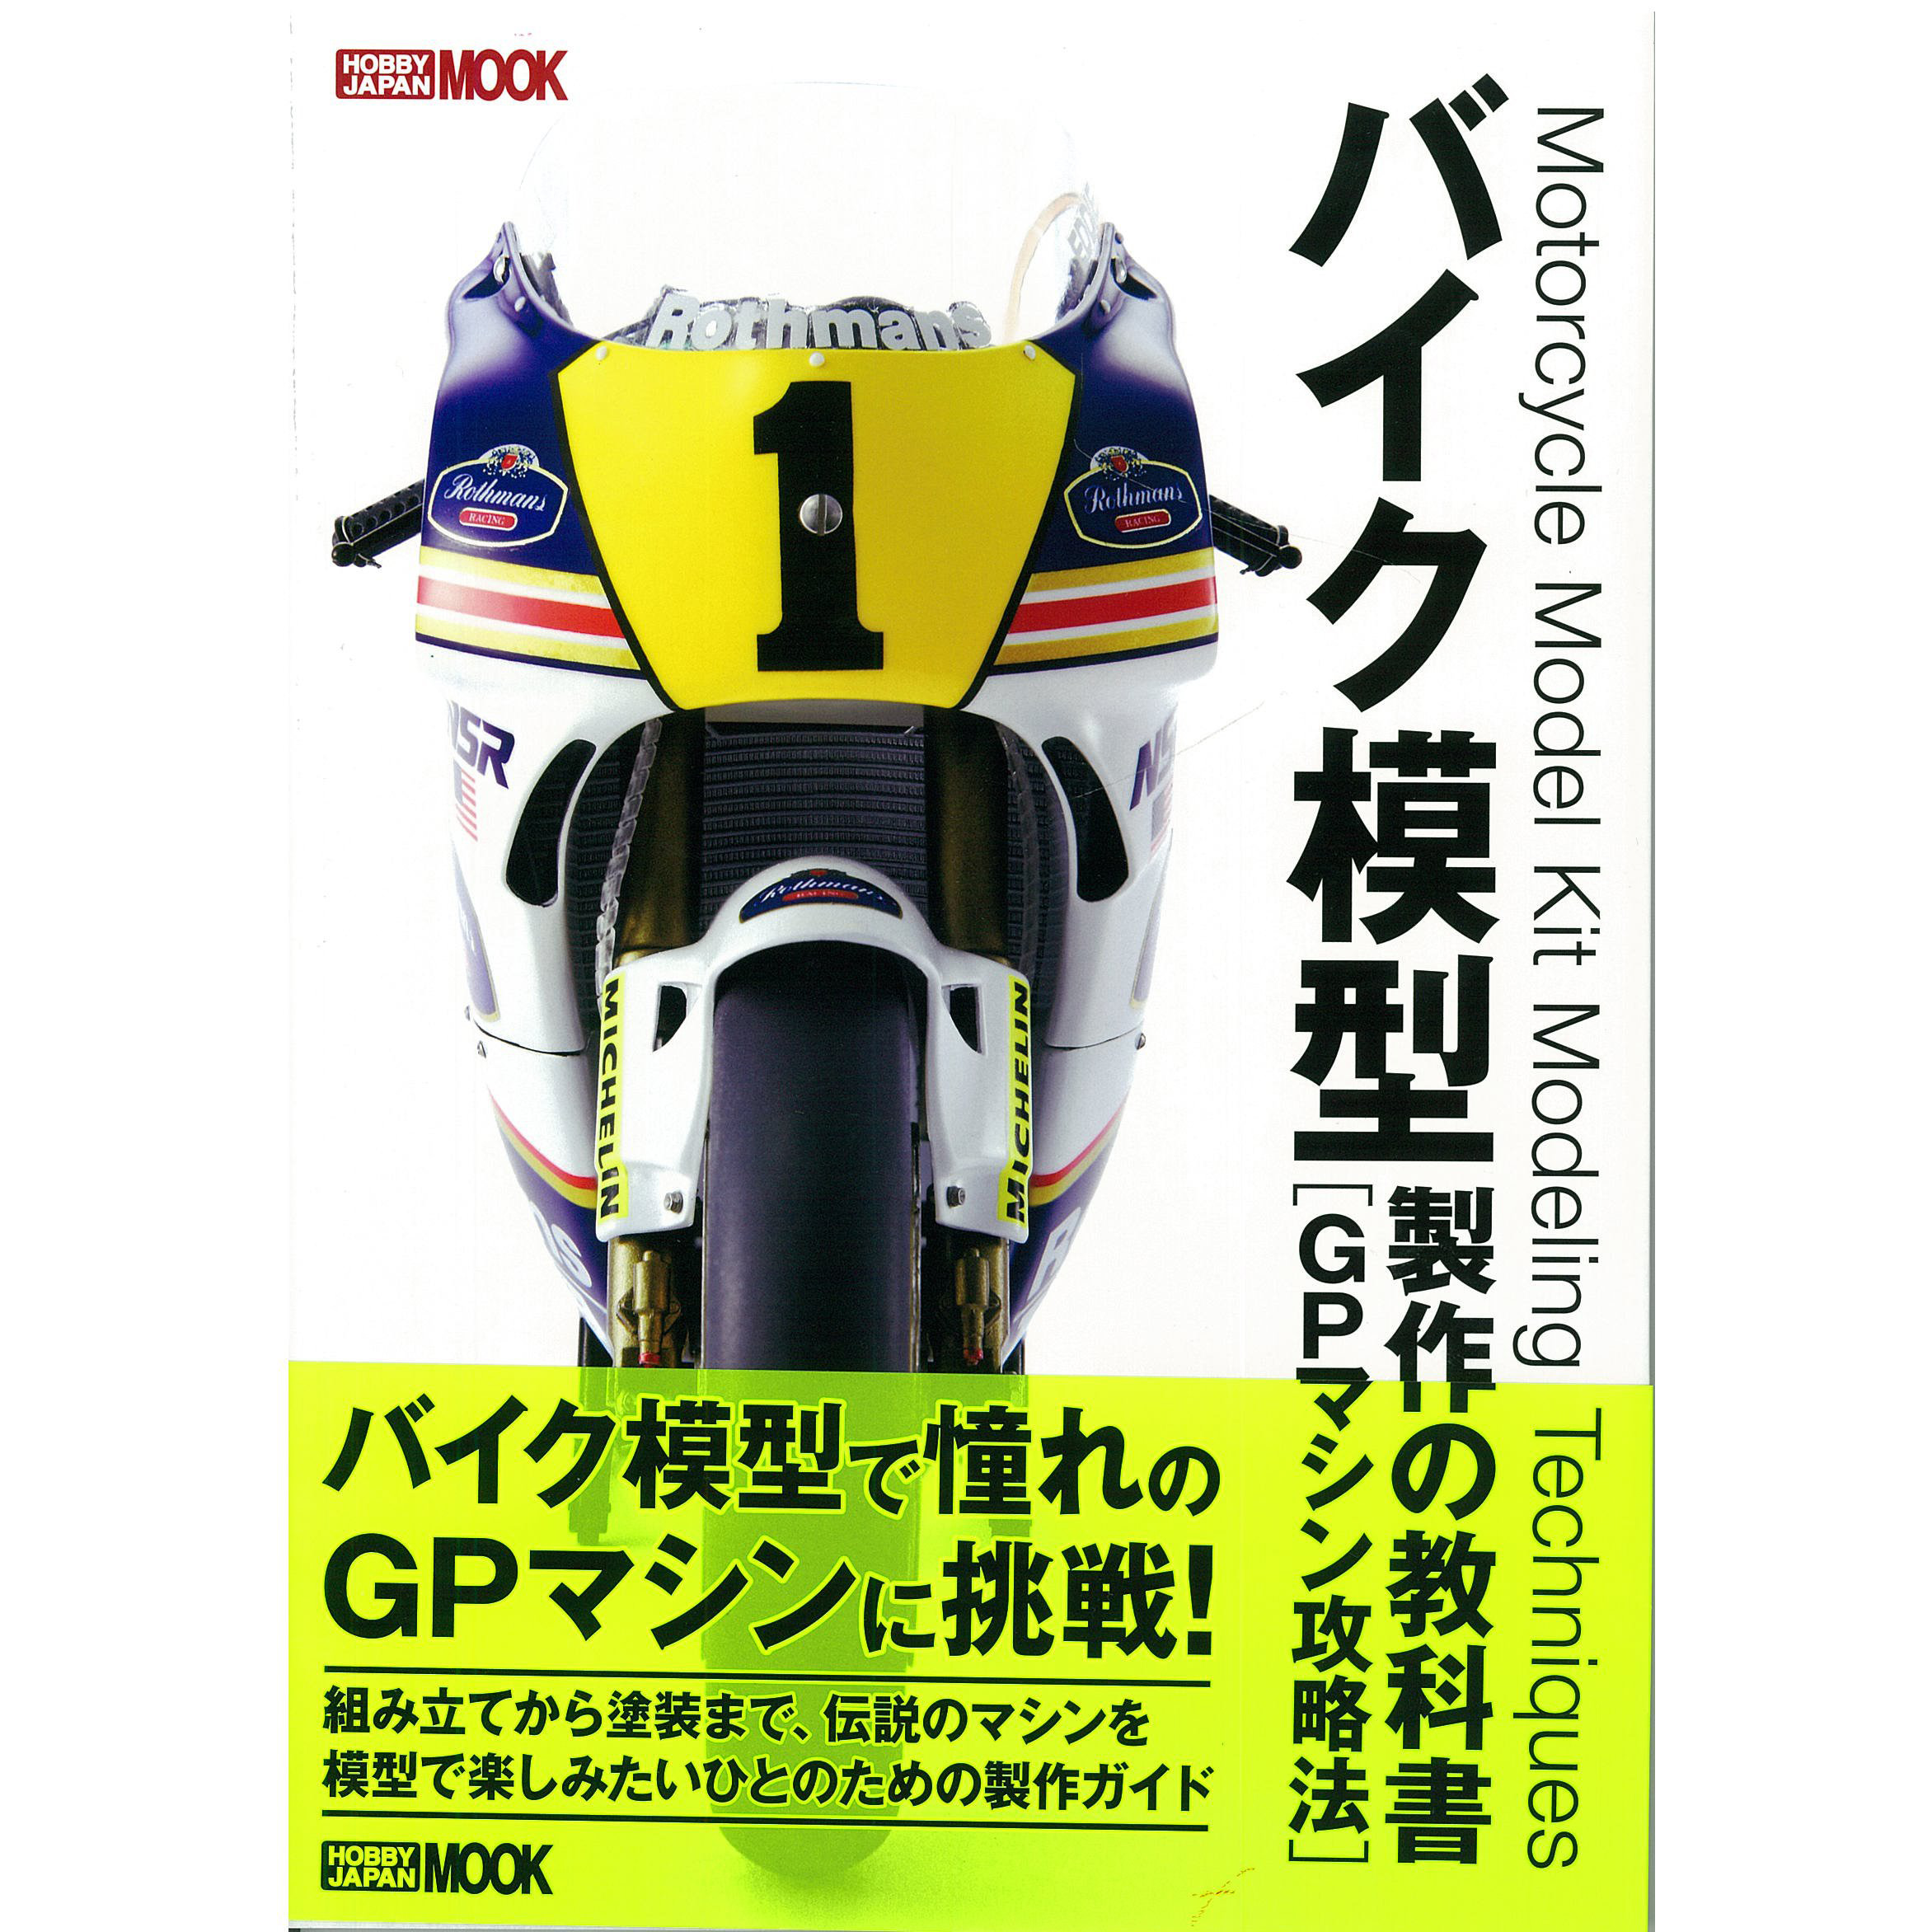 现货 バイク模型製作の教科書 GPマシン攻略法 摩托车模型制作书